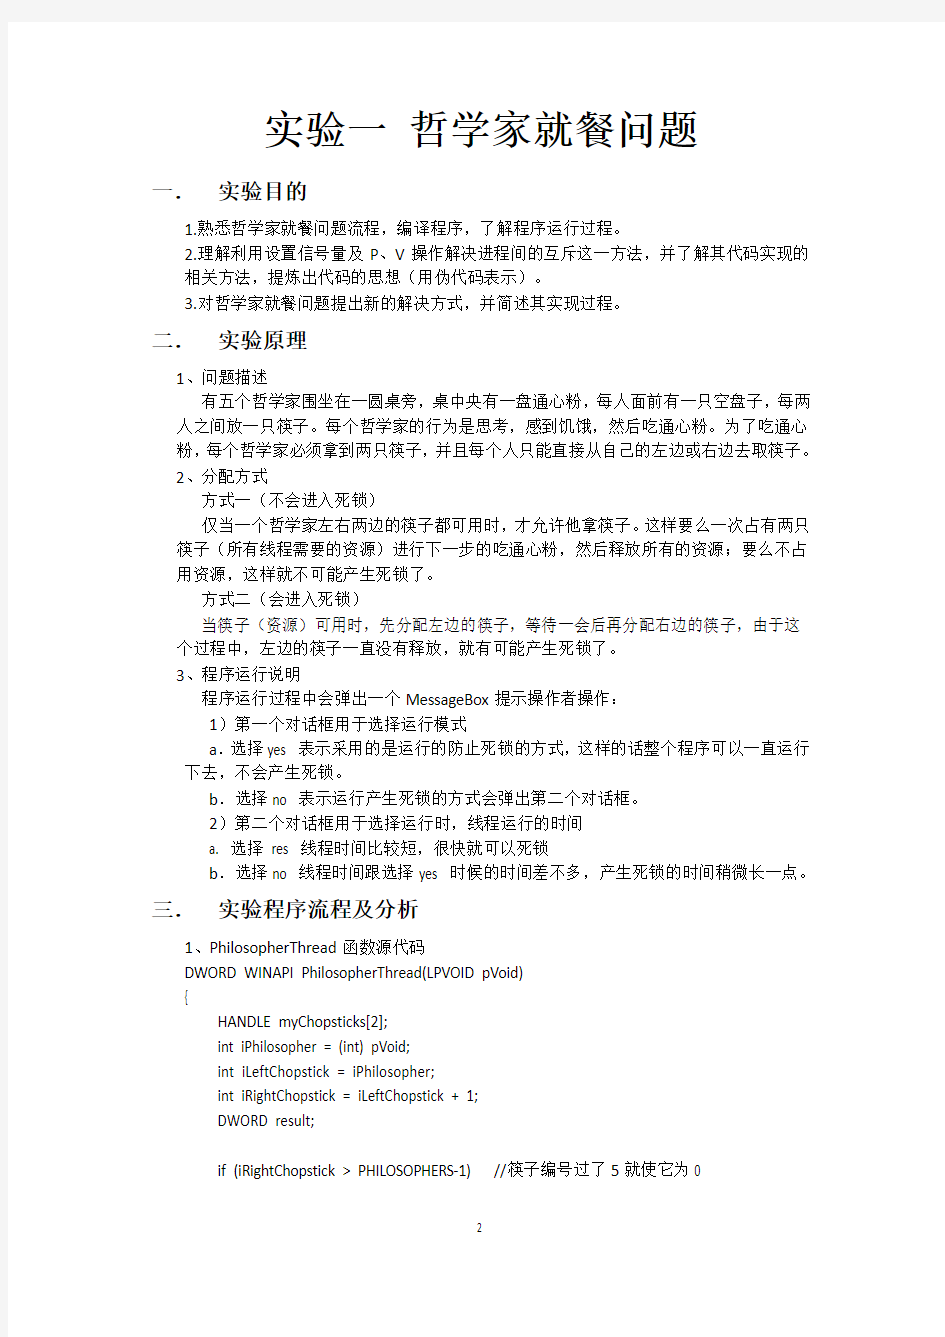 华中科技大学操作系统实验报告